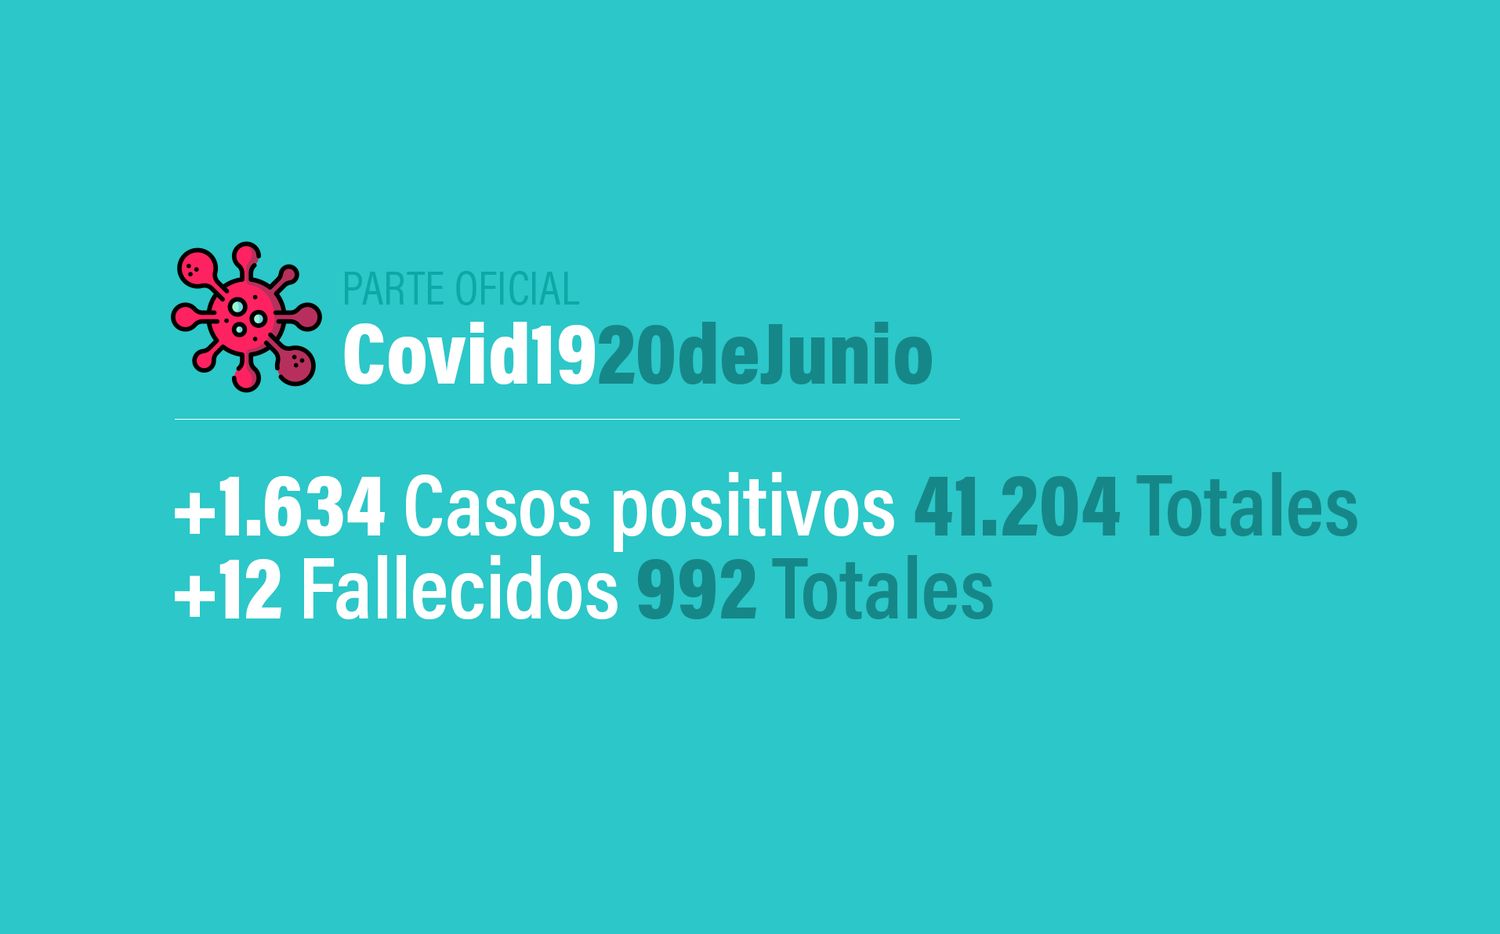 Coronavirus en Argentina: 1.634 nuevos casos, 41.204 confirmados y 992 muertes, al 20 de junio